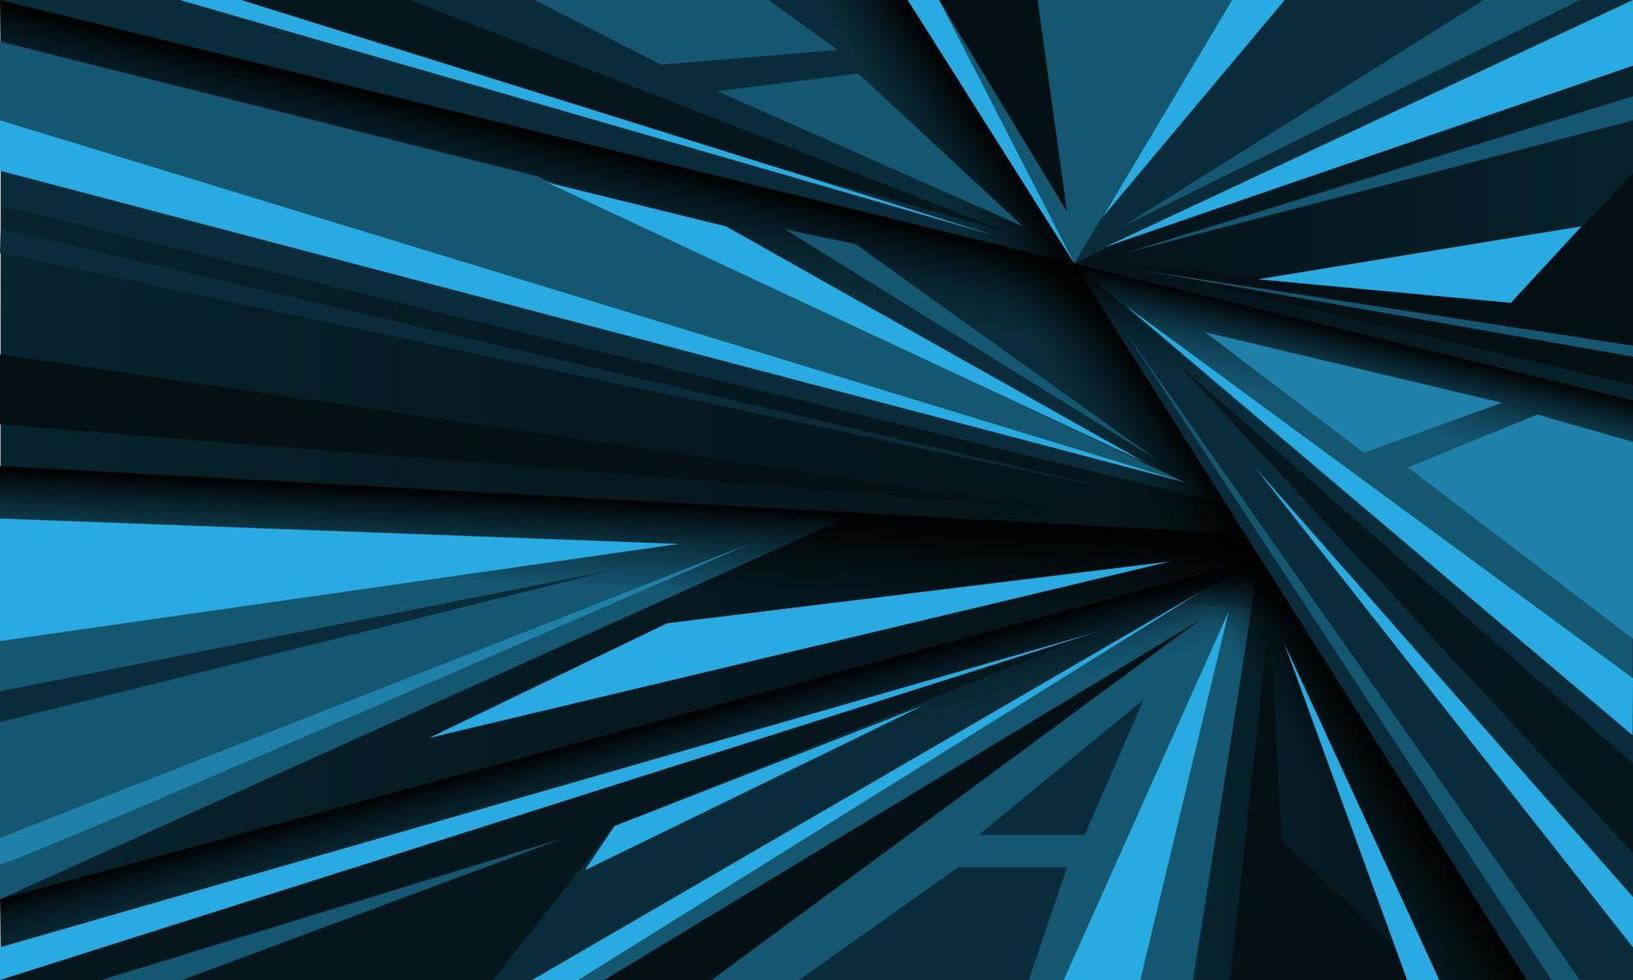 abstrakter blauer Ton geometrisches Dreieck vorstellen Design moderner futuristischer kreativer Hintergrundvektor vektor